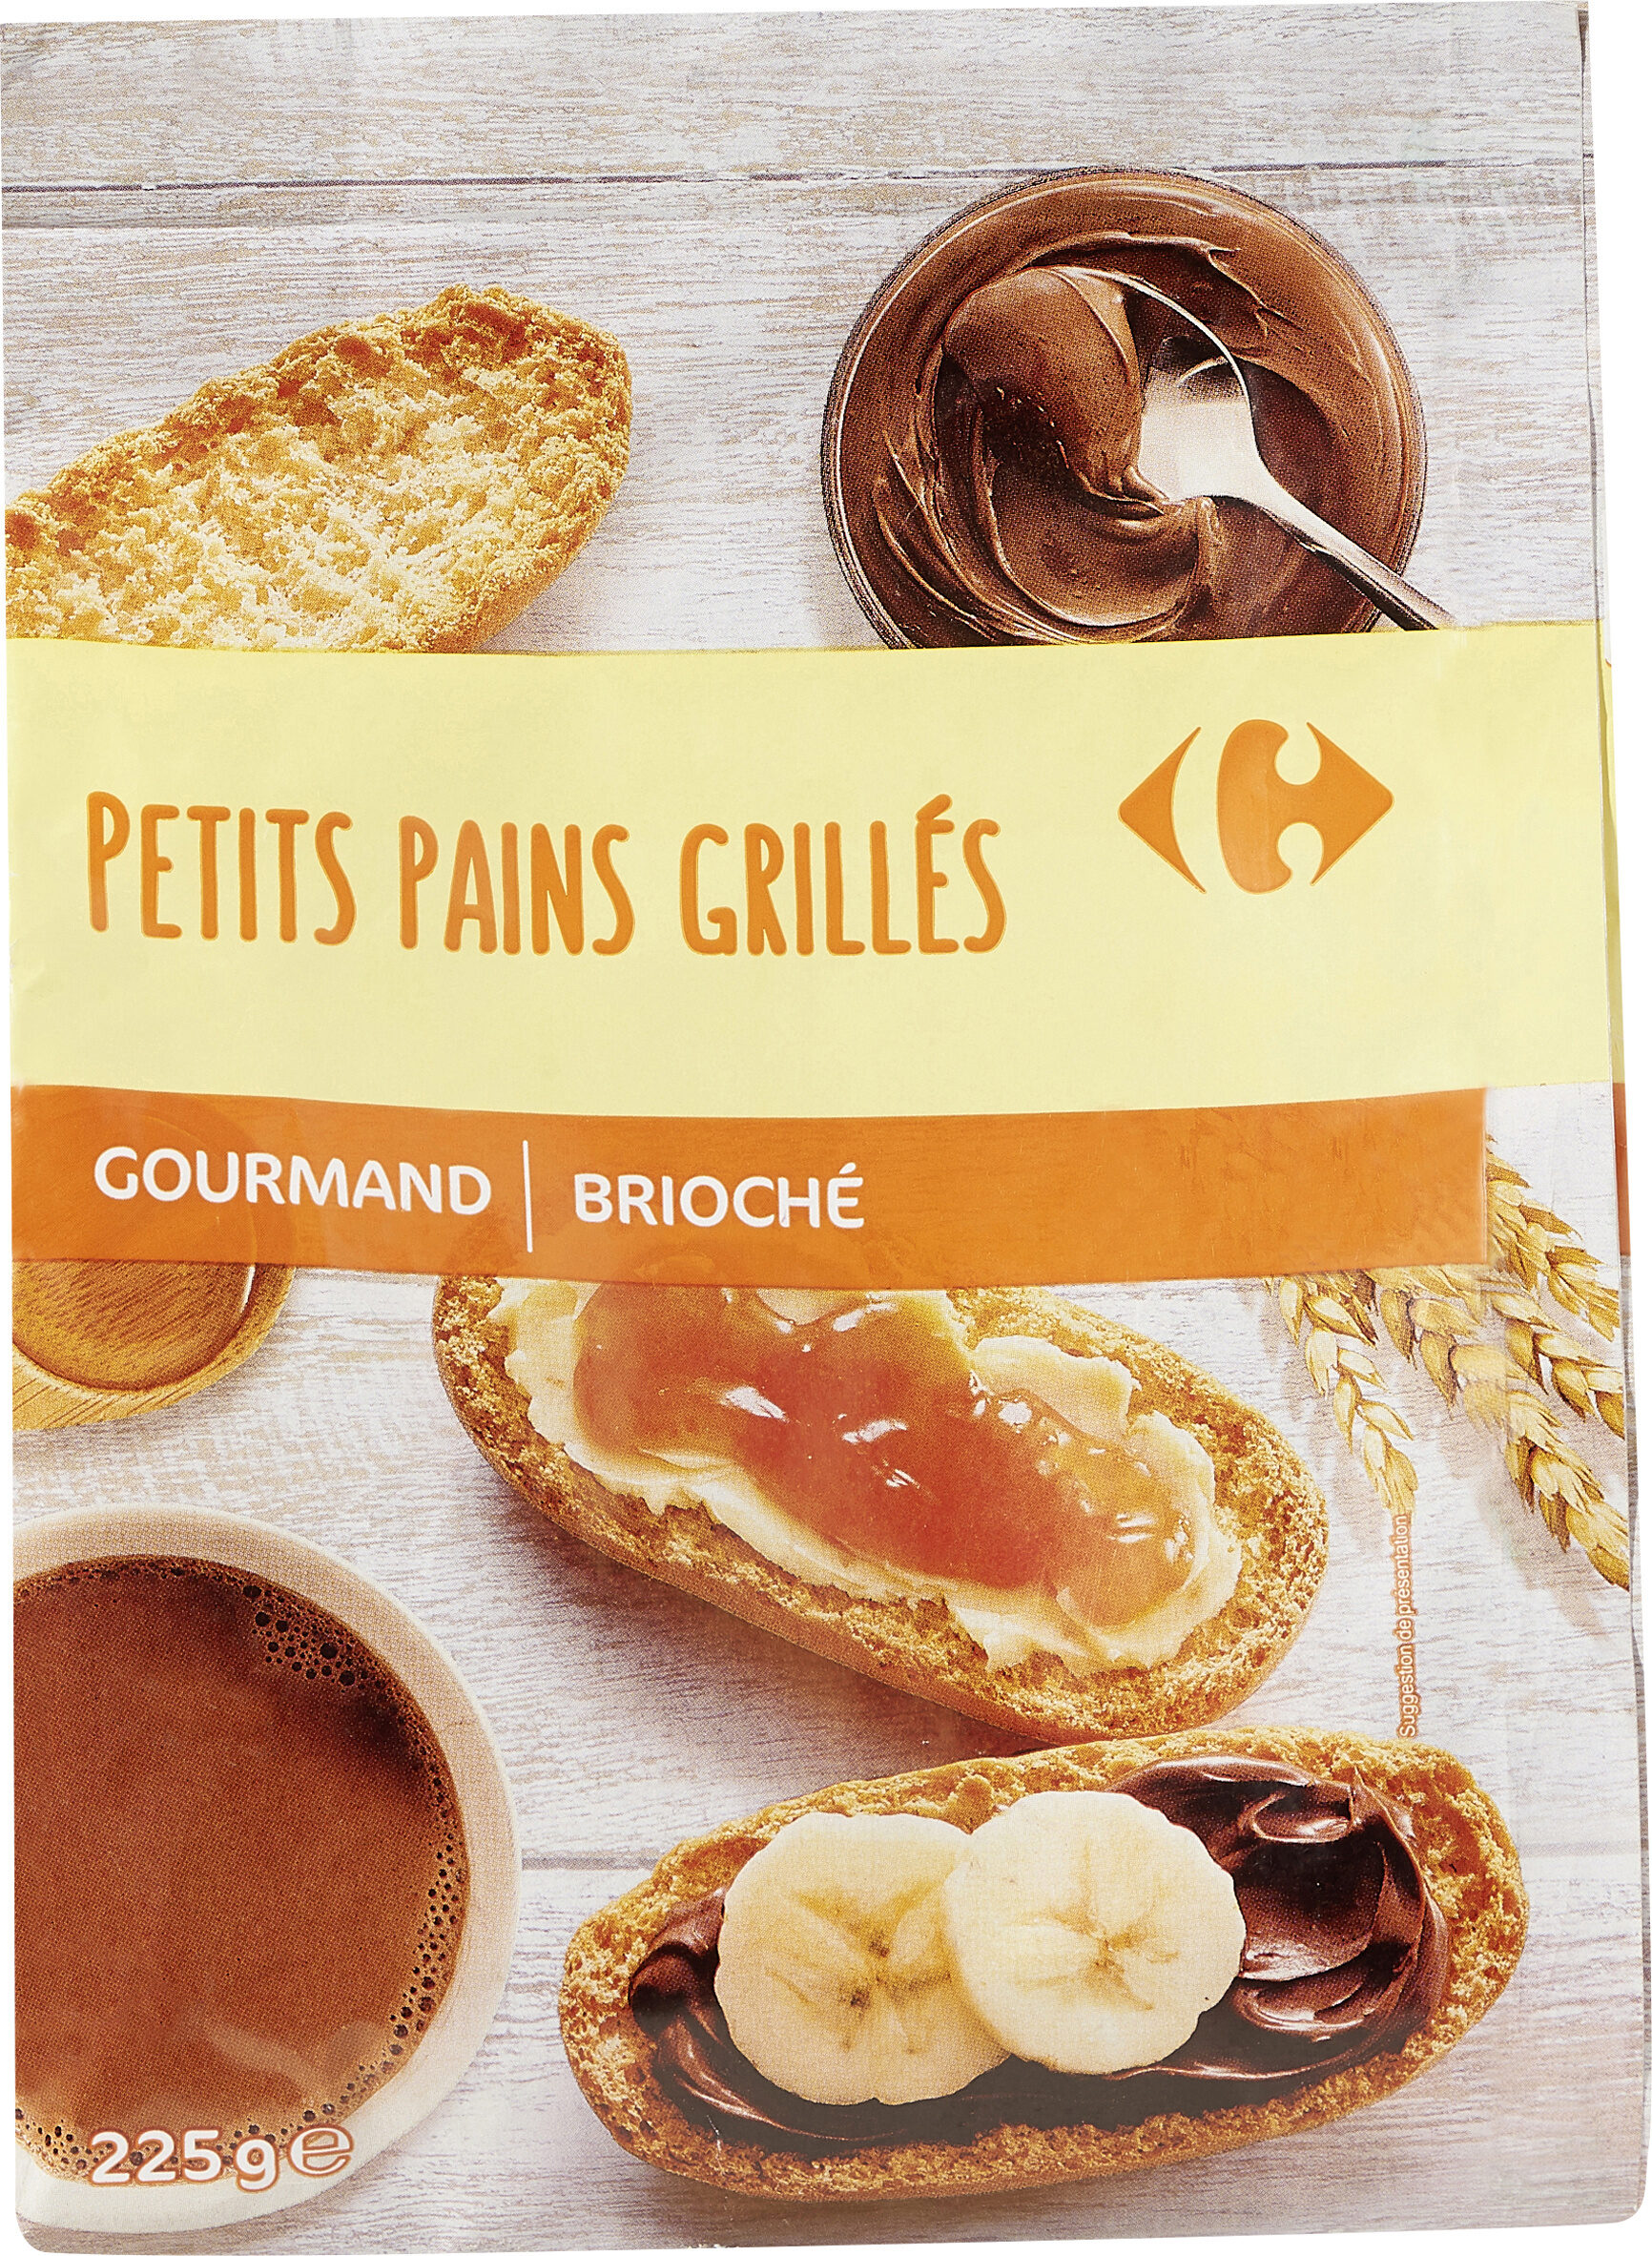 Petits pains grillés - Produkt - fr